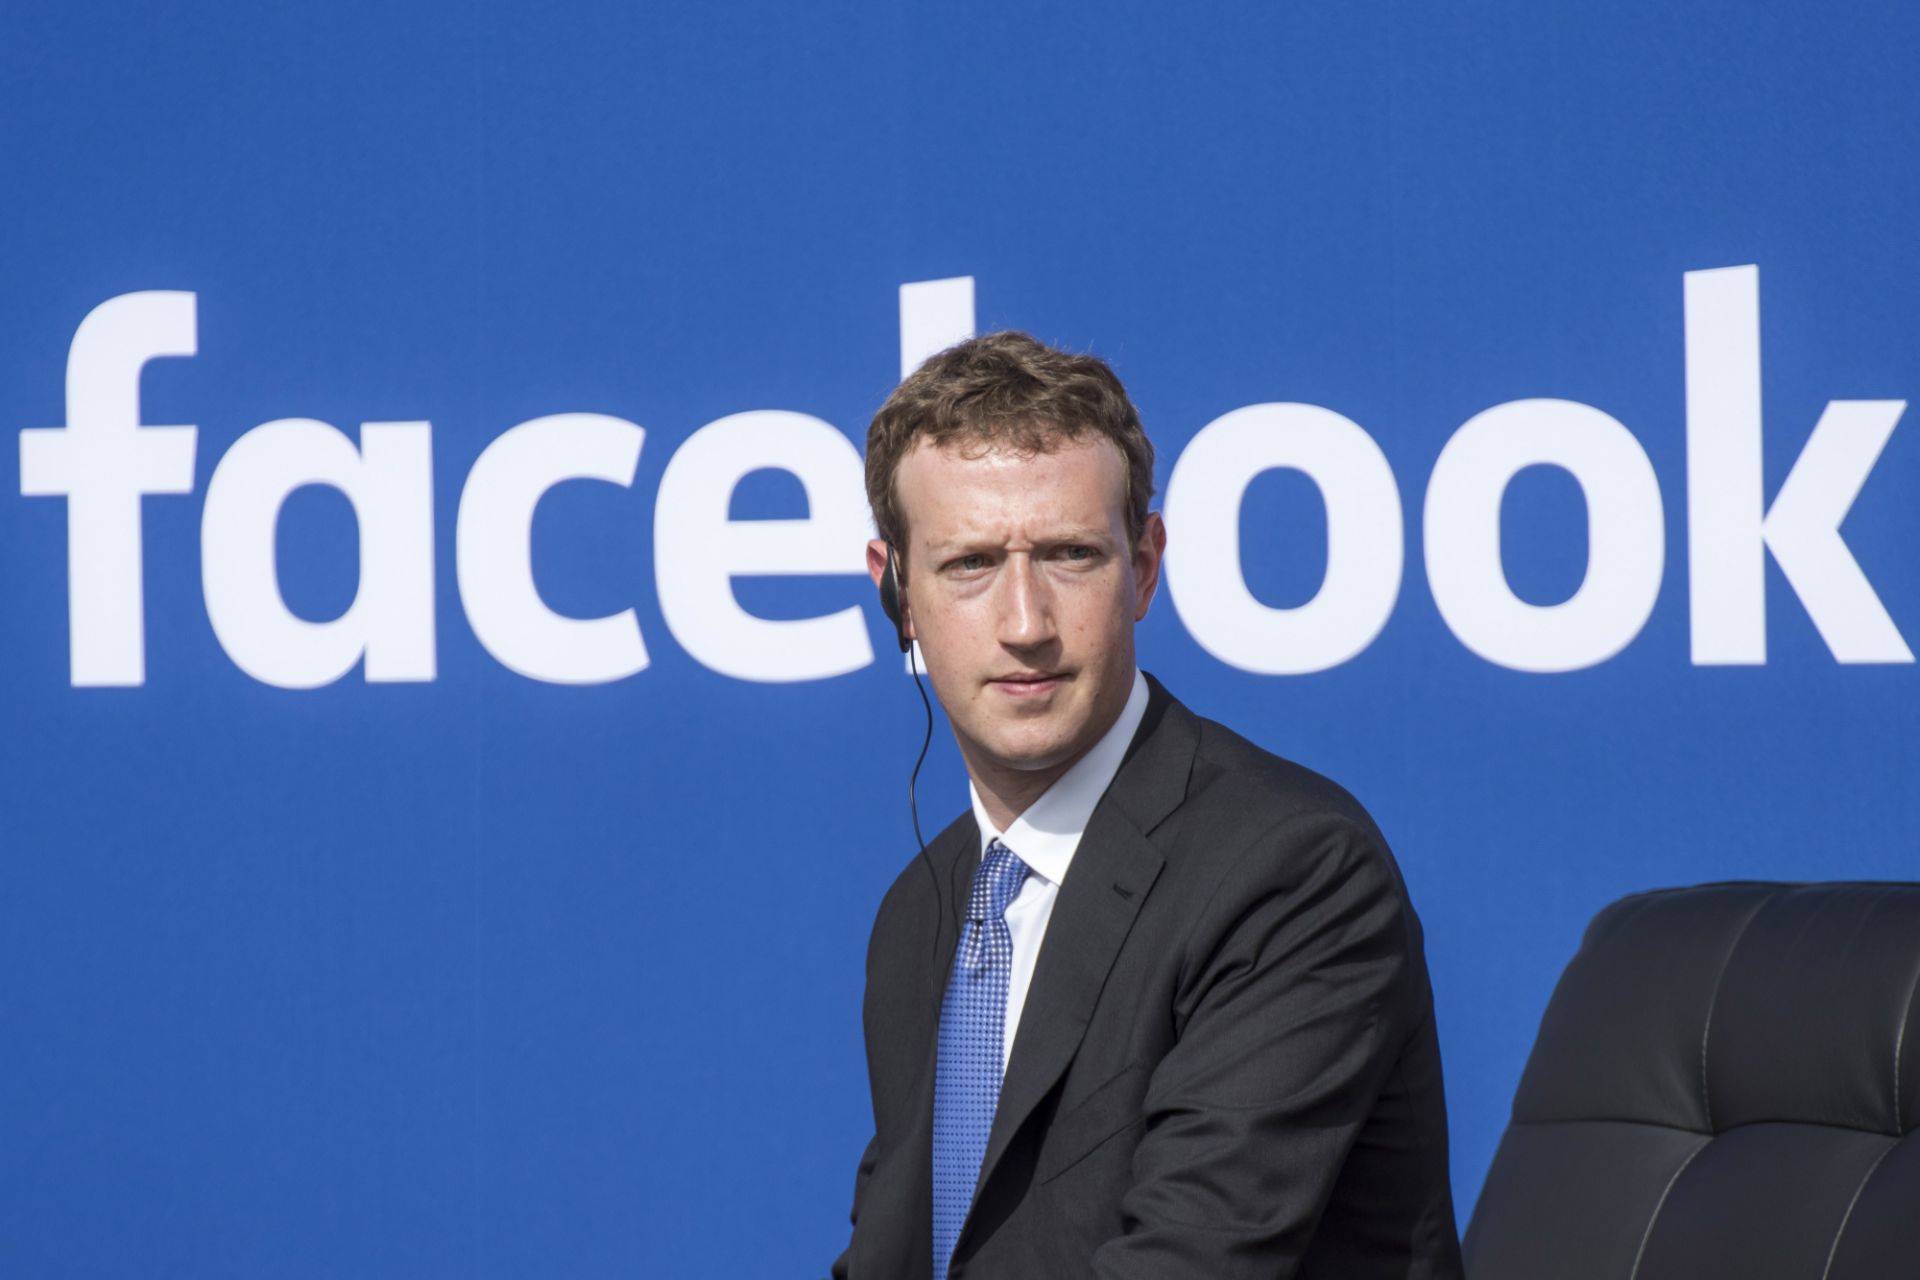 مارک زاکربرگ / Mark Zuckerberg با کت شلوار لوگو فیسبوک / Facebook در پس زمینه